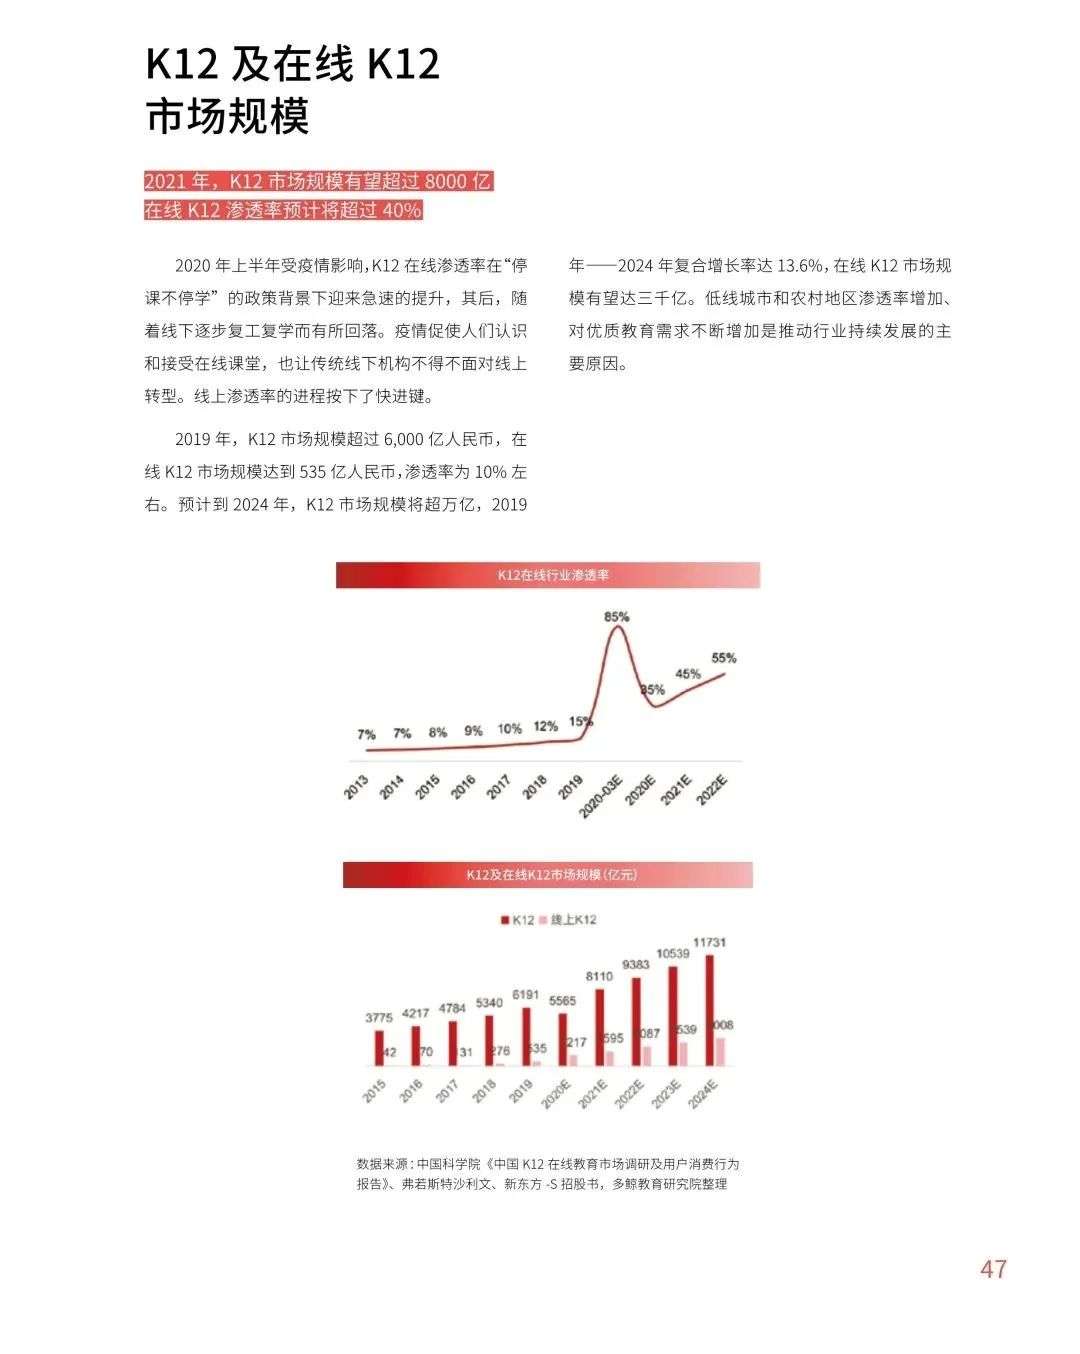 多鲸行研《2020 中国教育行业投融资报告》精简导读